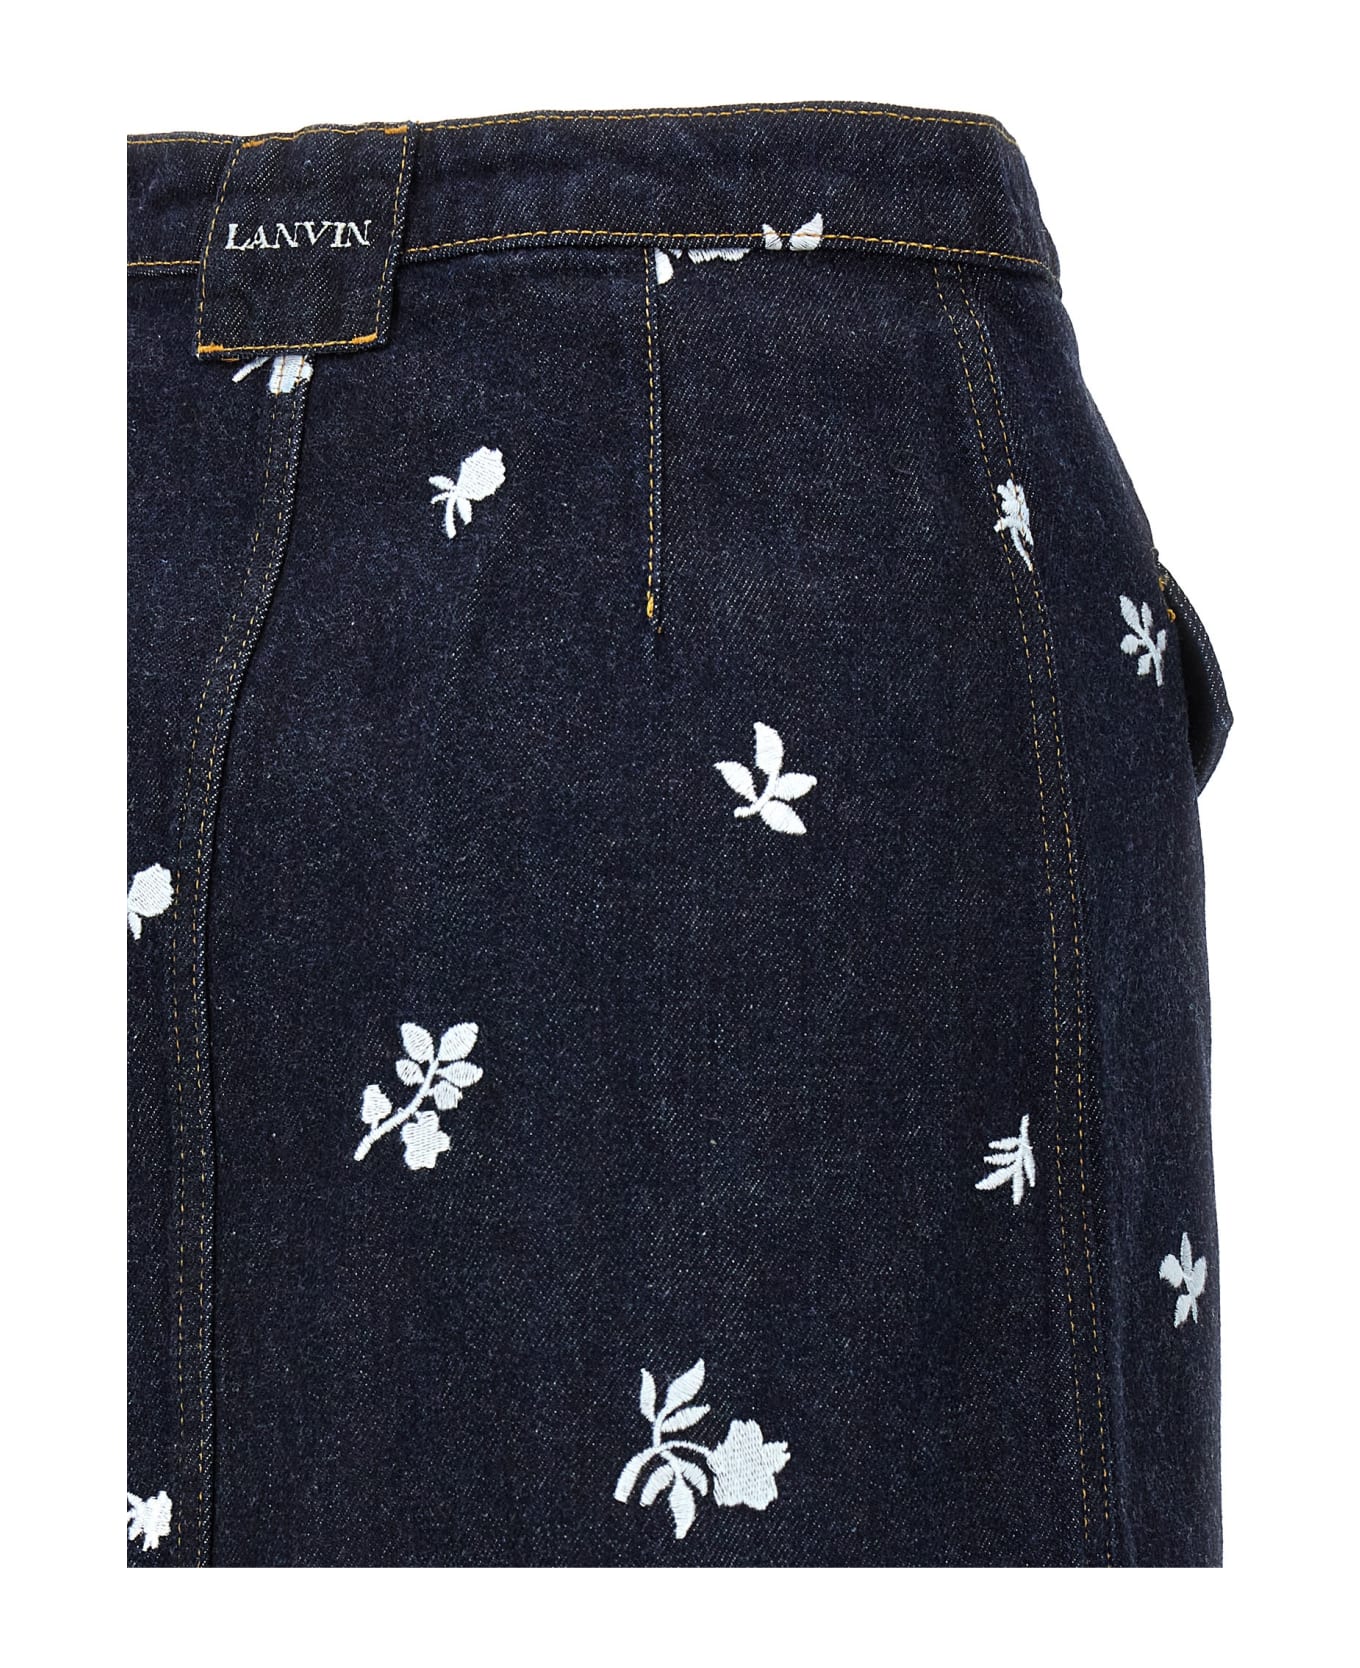 Lanvin All-over Magic Skirt - Navy Blue